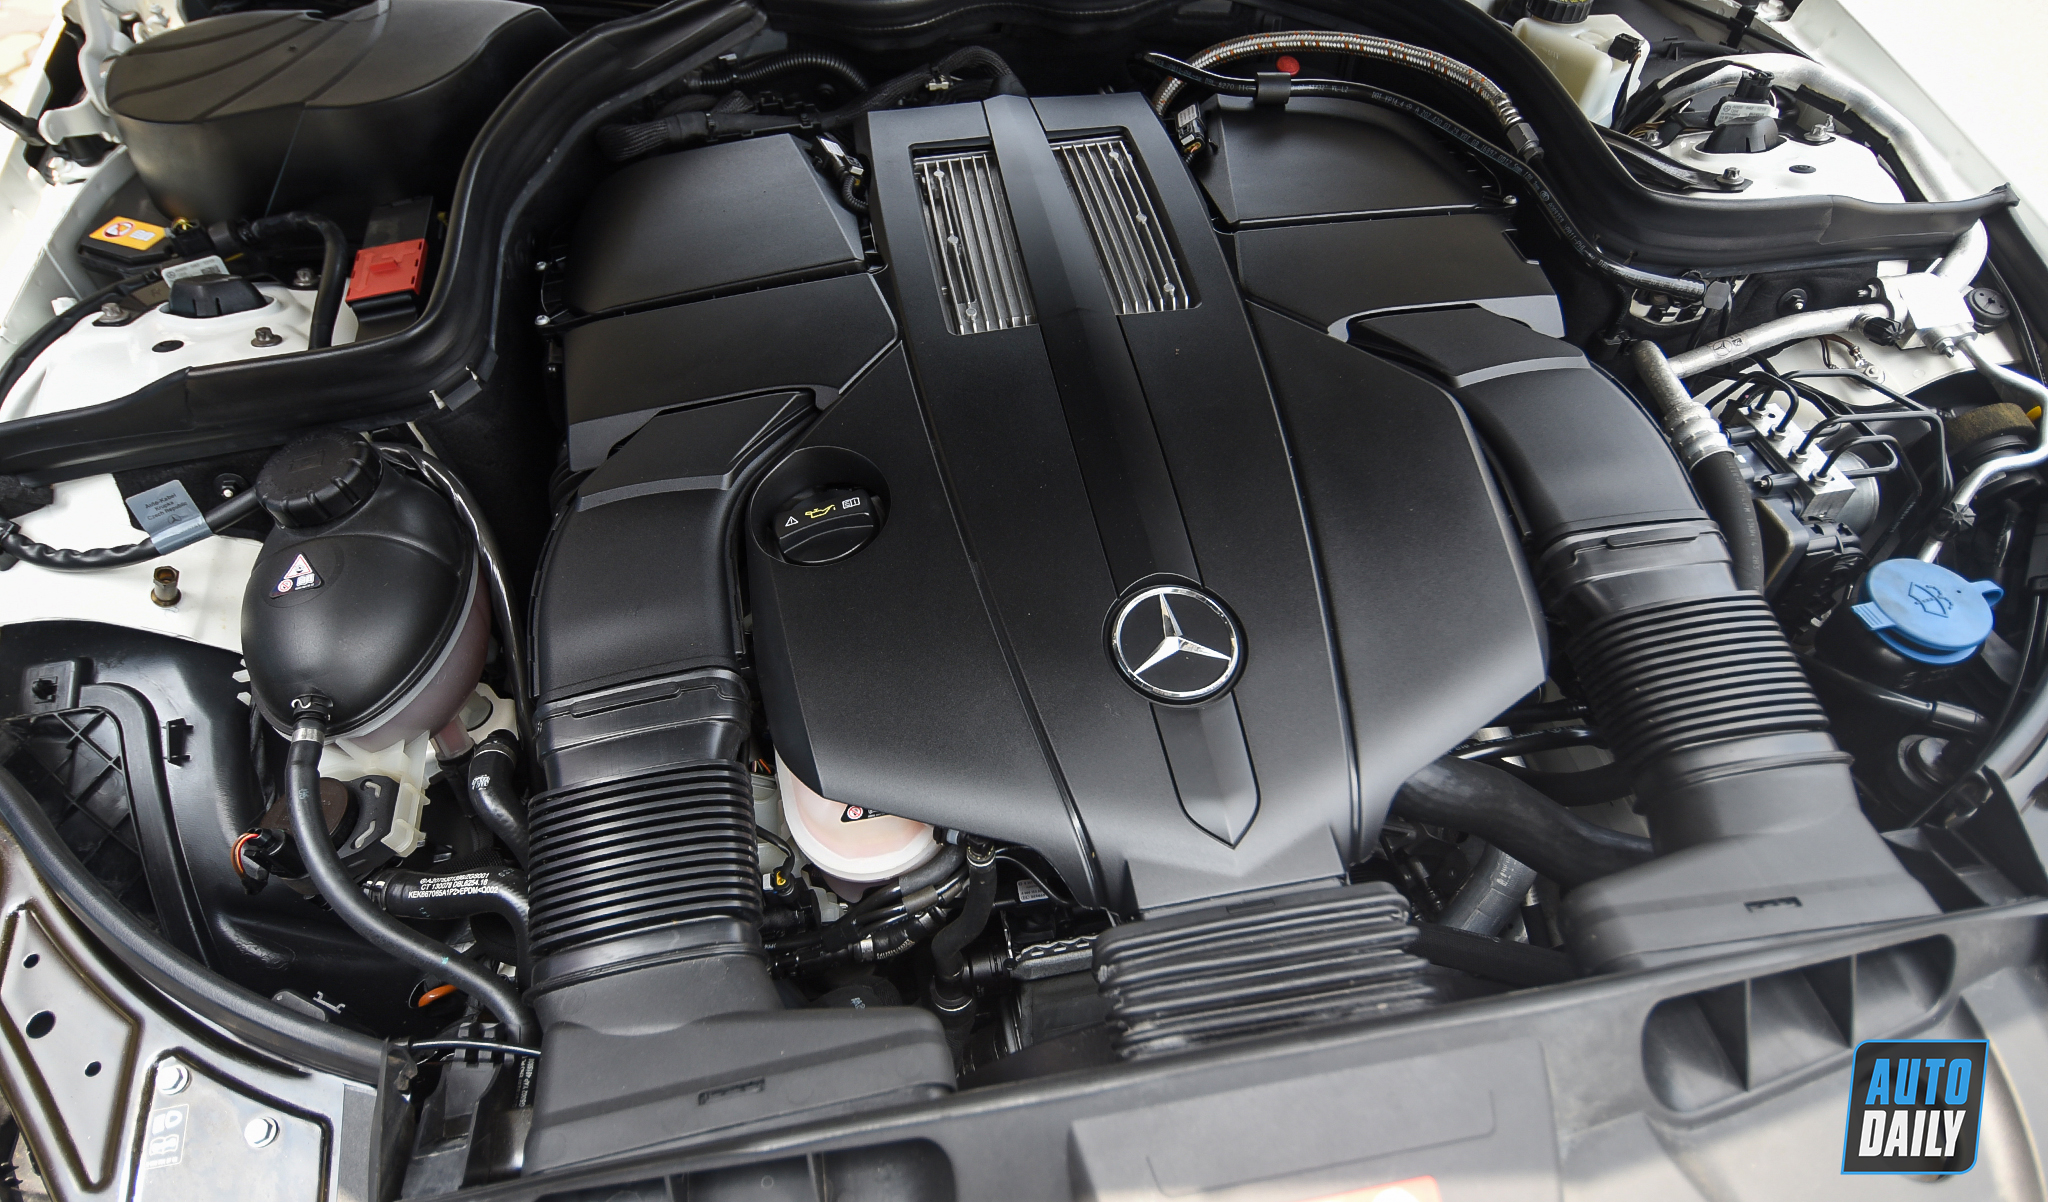 Mui trần hàng hiếm Mercedes-Benz E400 Cabriolet lên sàn xe cũ giá hơn 2 tỷ adt-4958-copy.jpg